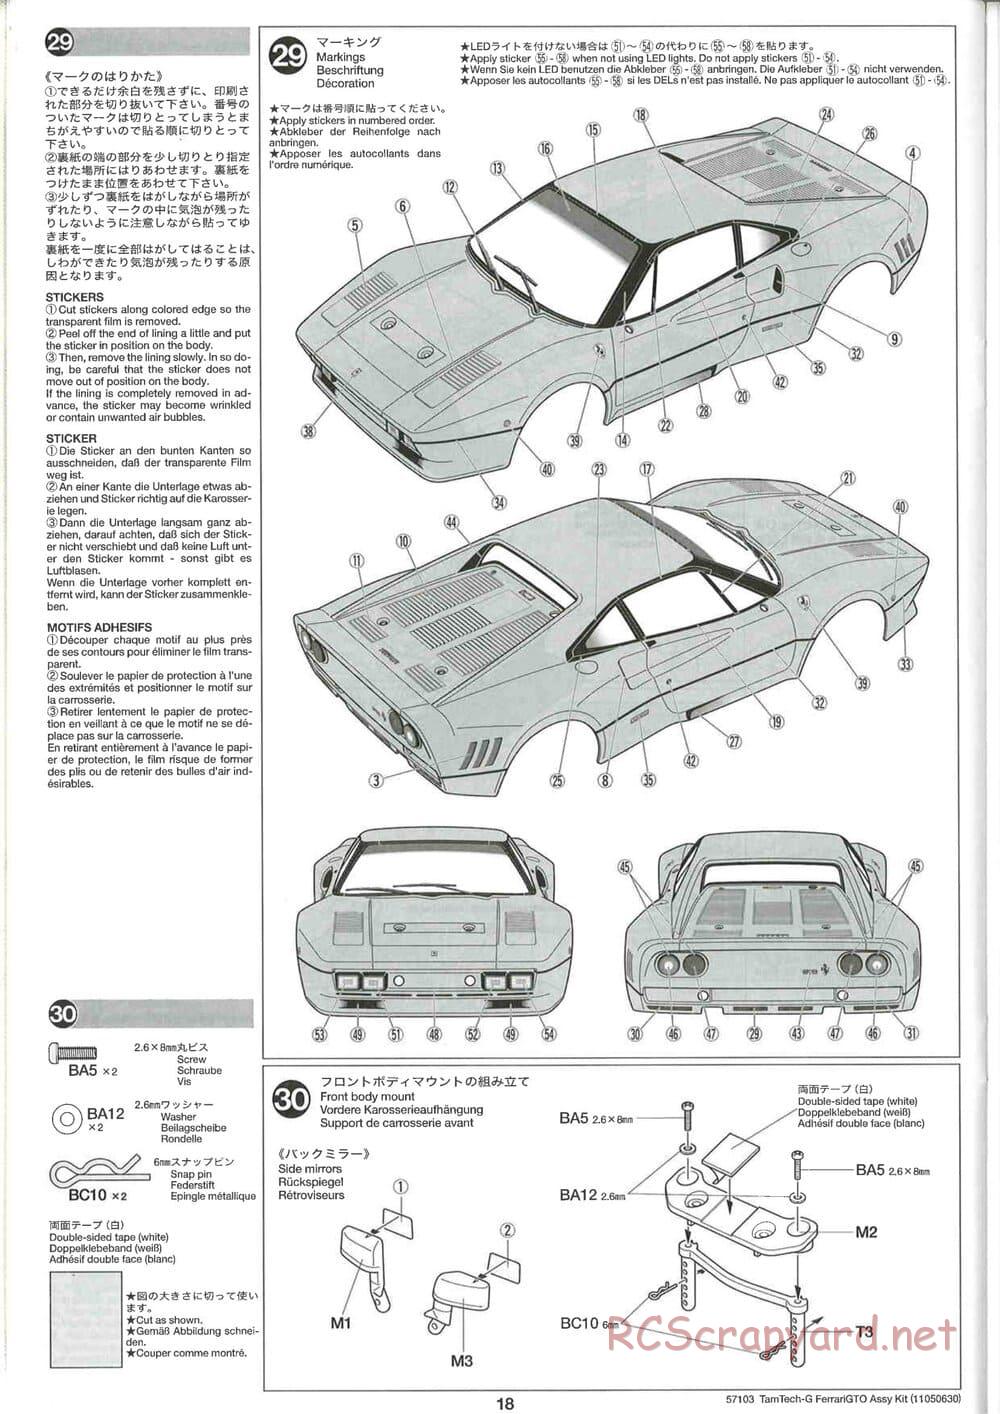 Tamiya - Ferrari 288 GTO - GT-01 Chassis - Manual - Page 18